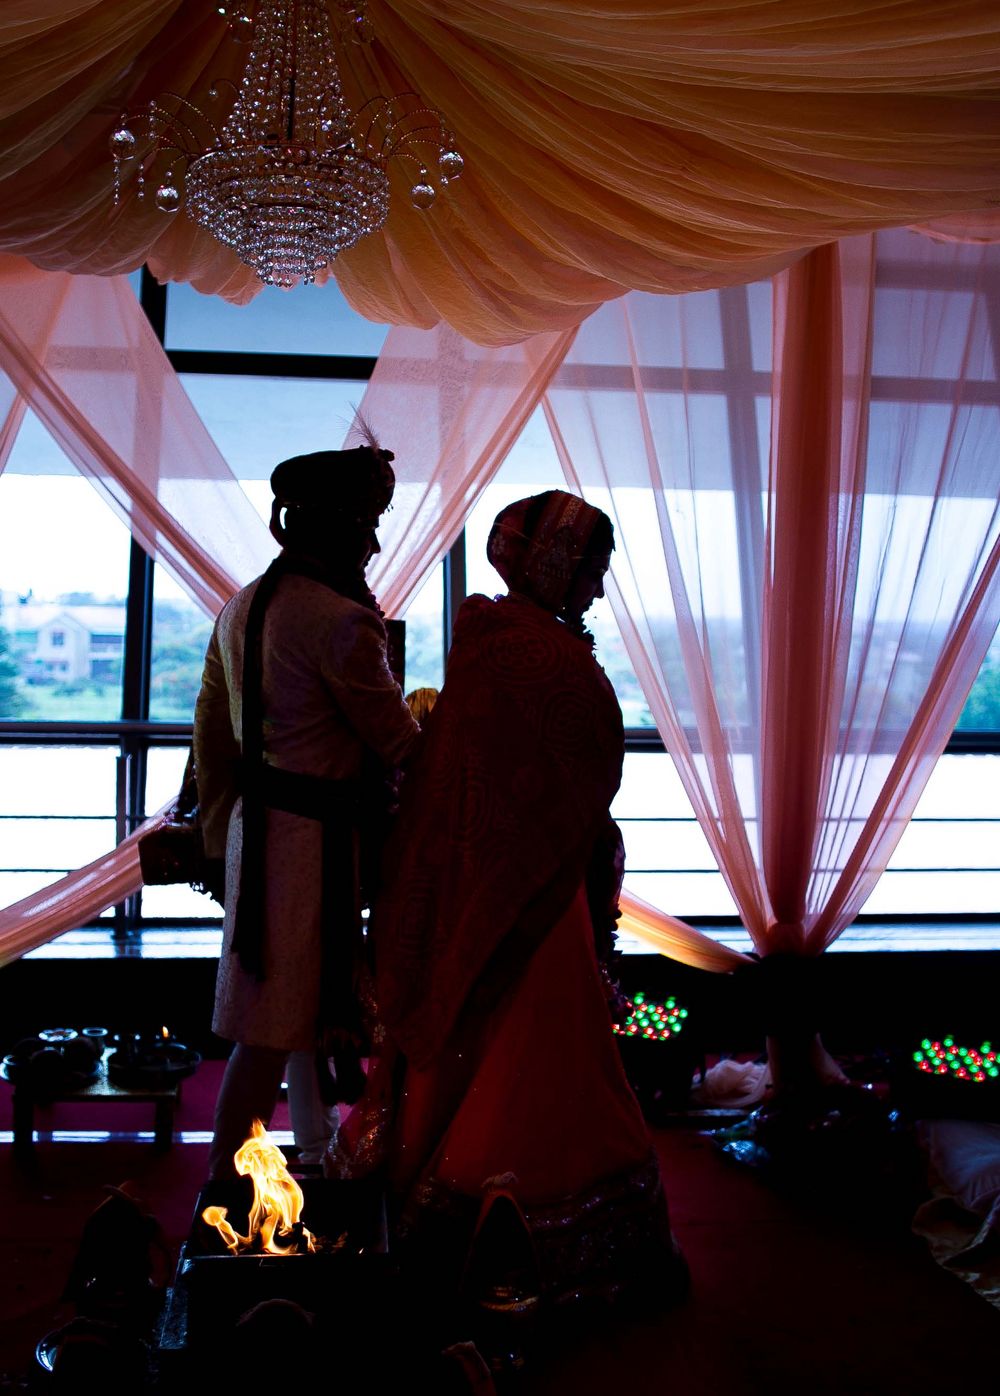 Photo From Nikhil & Vanpriya - By Sutra Weddings